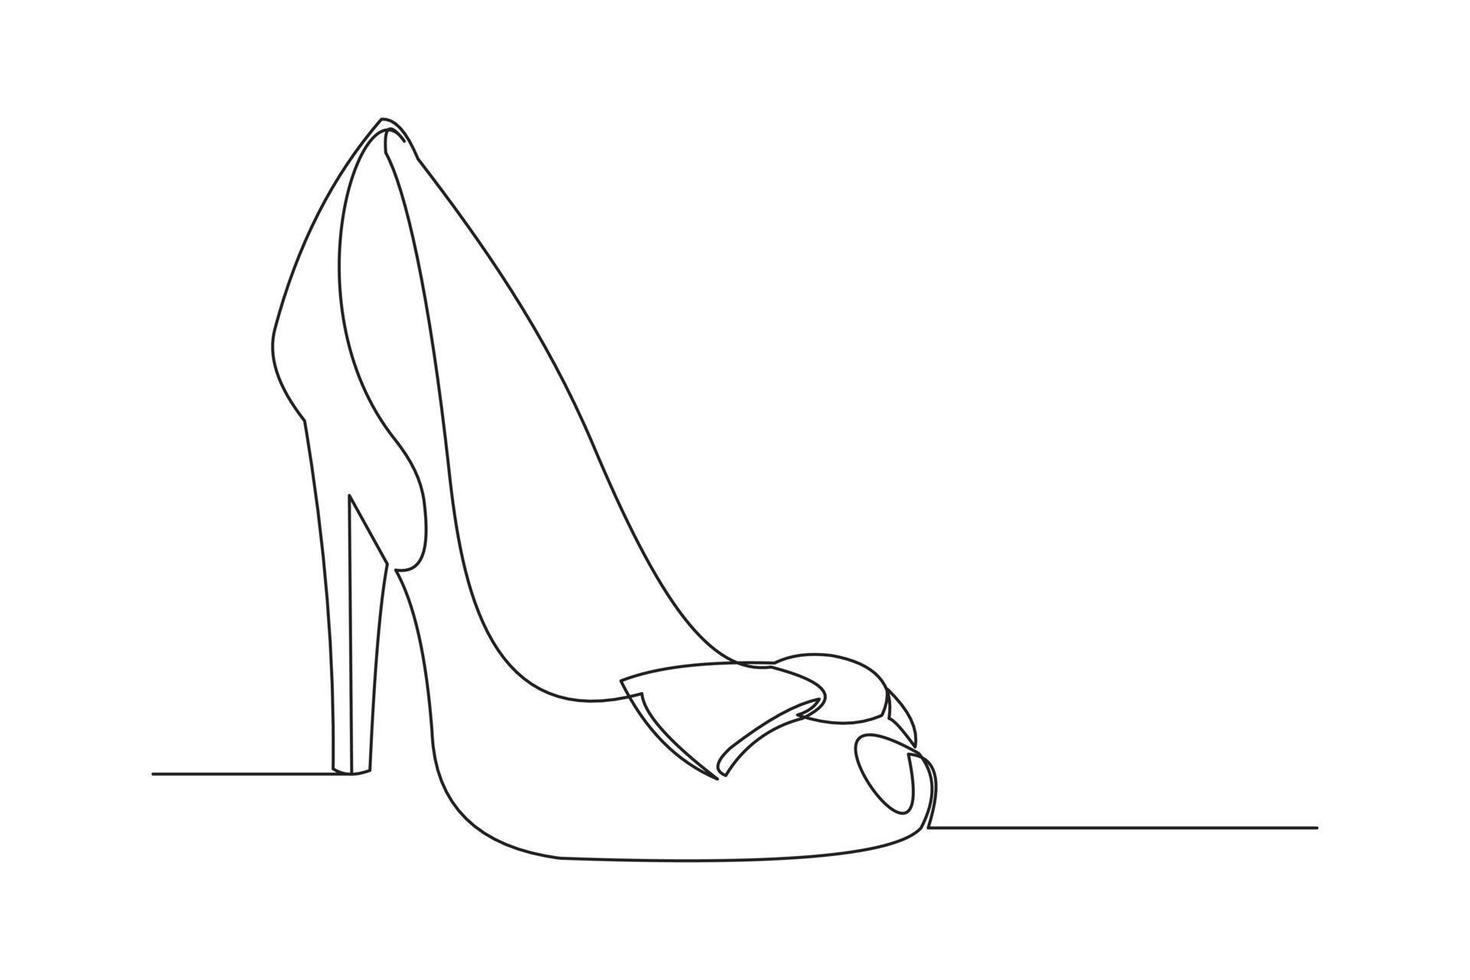 dessin en ligne continu de chaussures à talons hauts femme. dessin au trait unique de belles chaussures de mode femme. illustration vectorielle vecteur